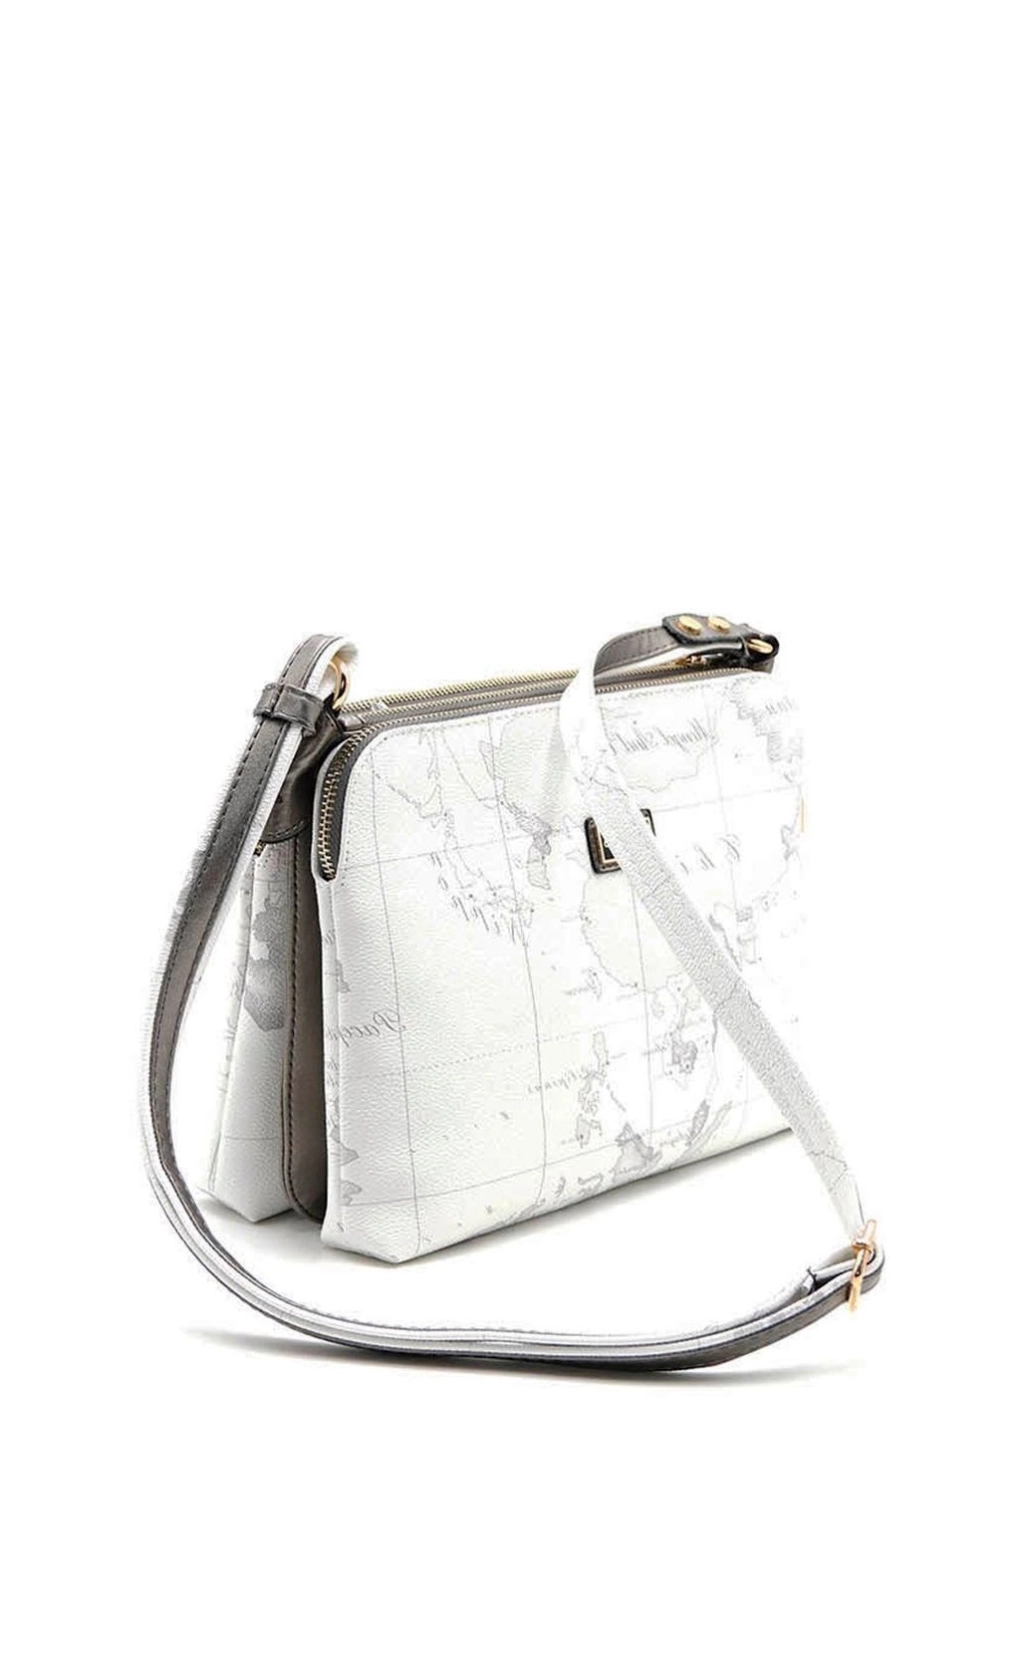 Дамска квадратна чанта с глобус в бял цвят SIlver&Pоlo